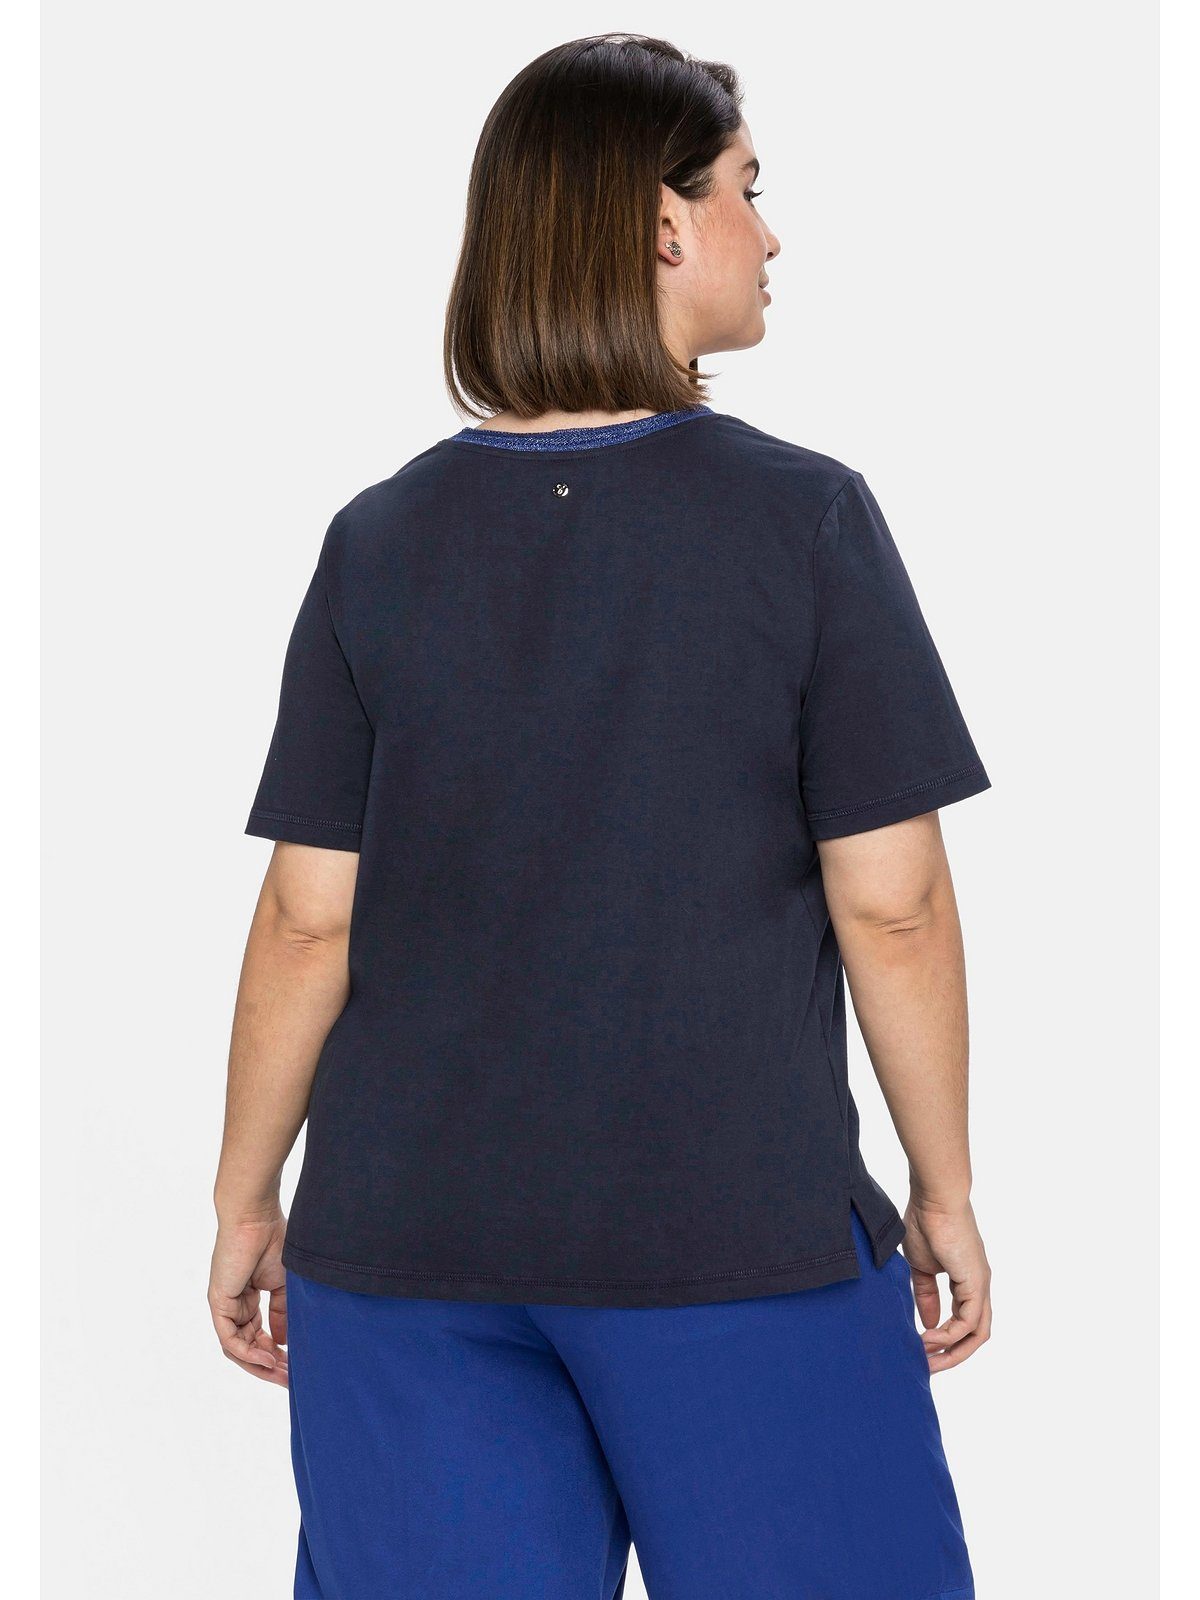 Größen Große Ausschnitt am T-Shirt Frontdruck und Effektgarn mit nachtblau modischem Sheego